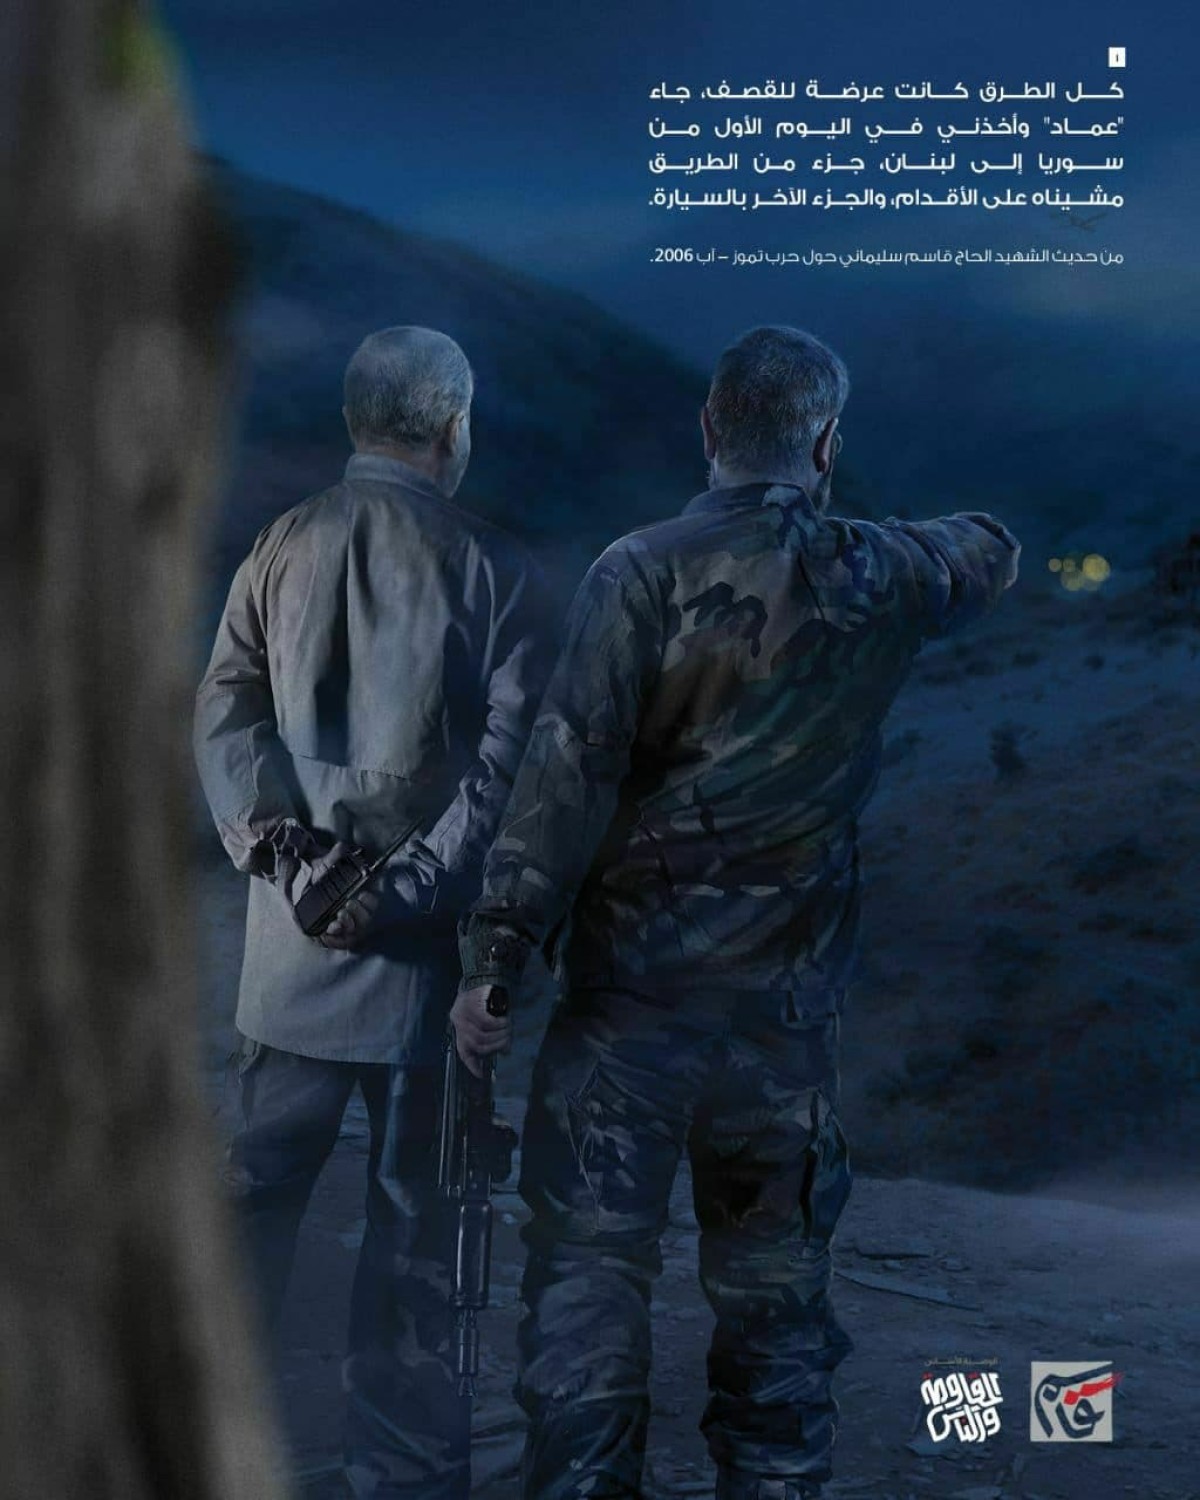 مجموعة رسم توضيحي لقصة الشهيد الحاج قاسم سليماني عن وجوده في حرب الـ 33 يومًا مع الشهيد مغنية